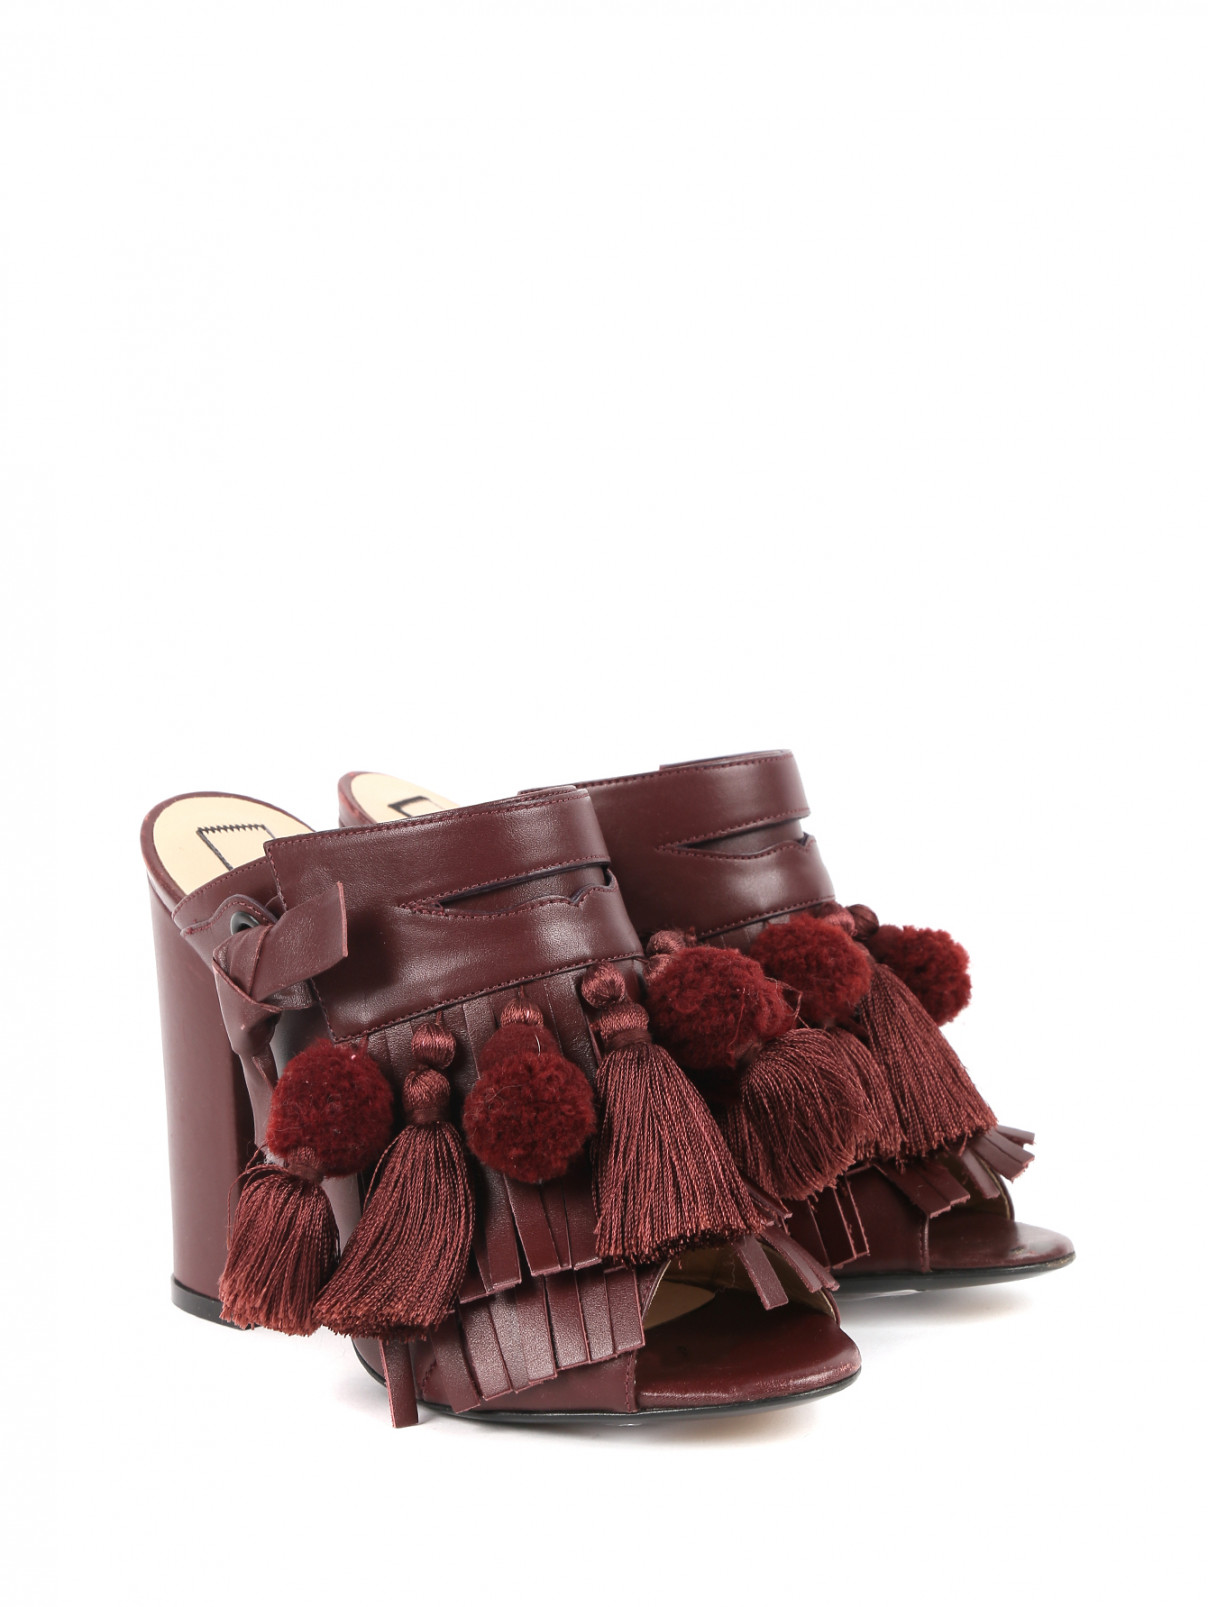 Мюли  из кожи с декоративной бахромой N21  –  Общий вид  – Цвет:  Красный